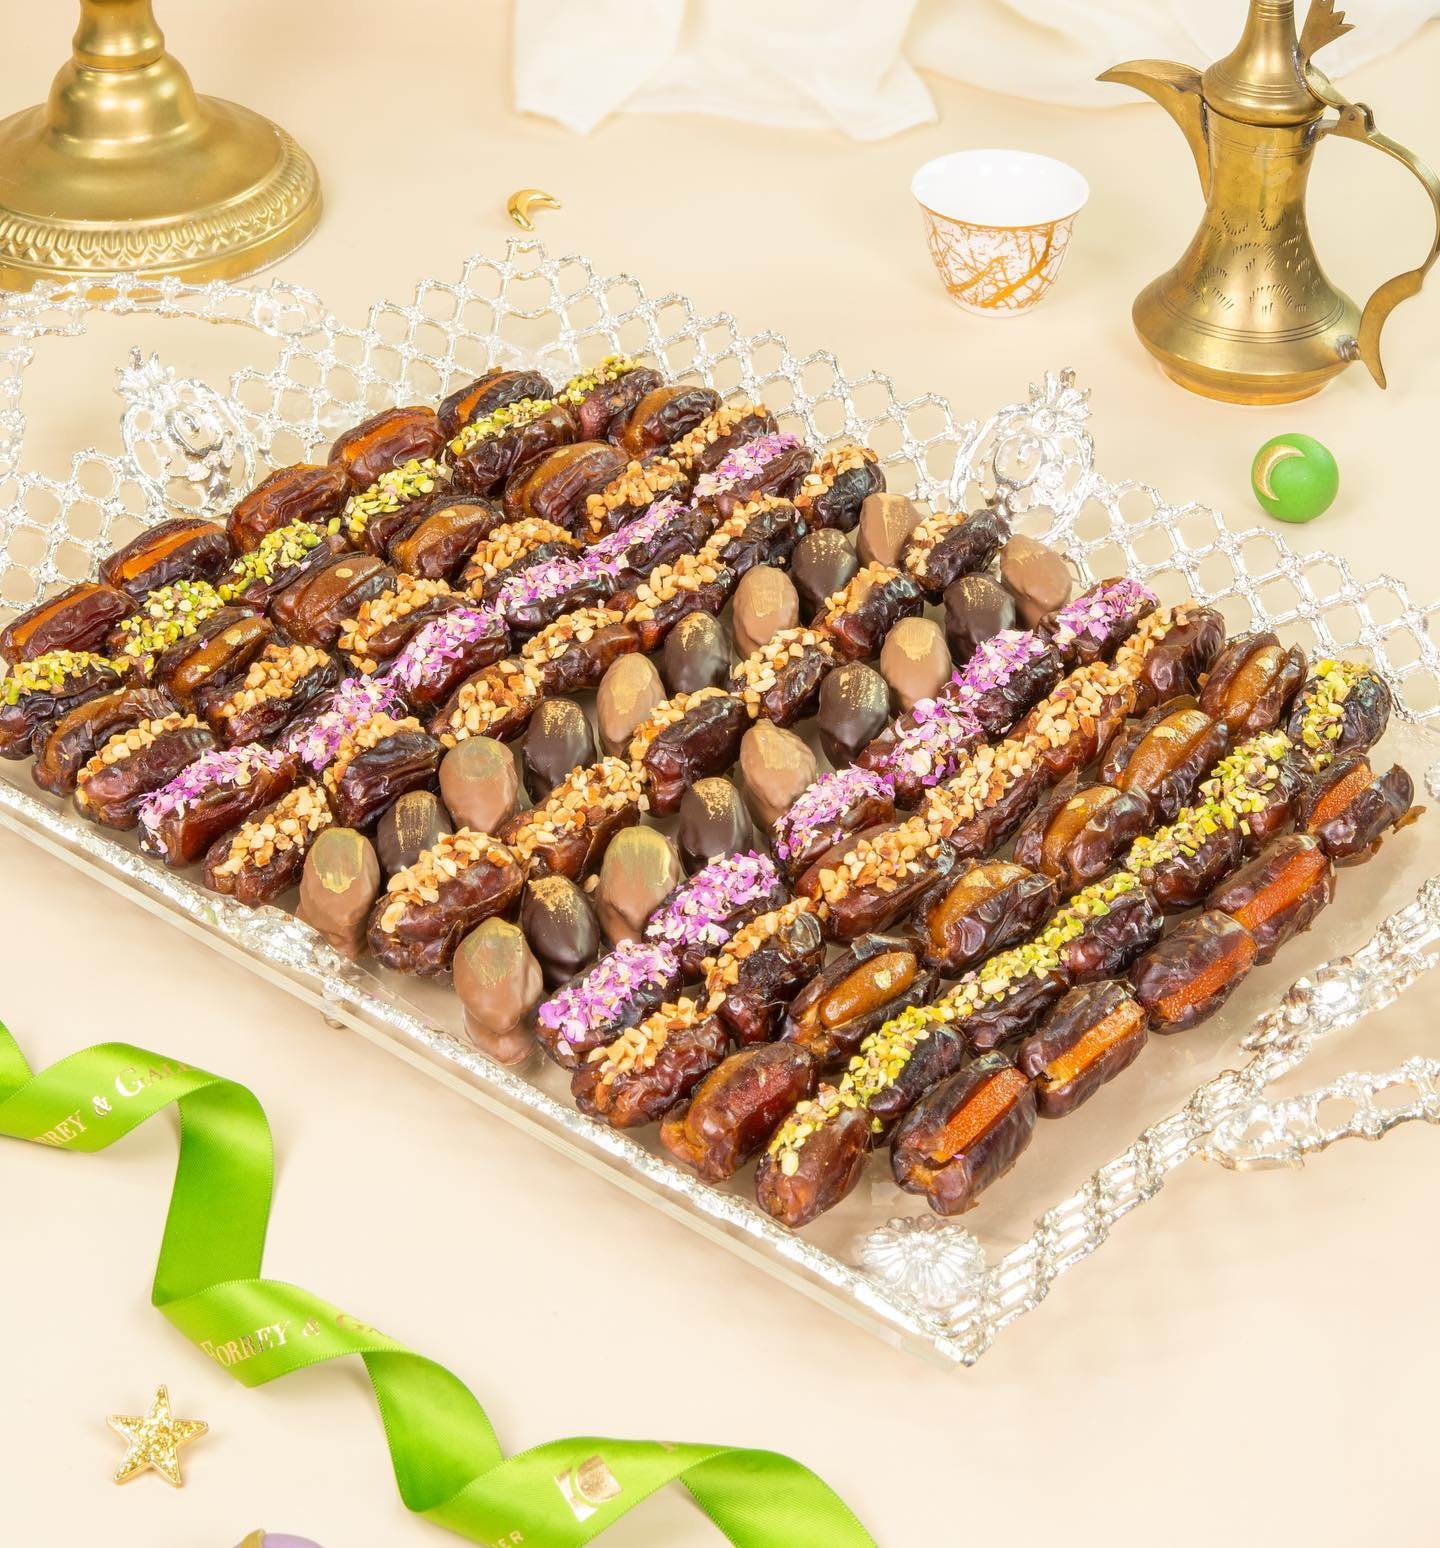 محل حلويات في الامارات في عيد الاضحى